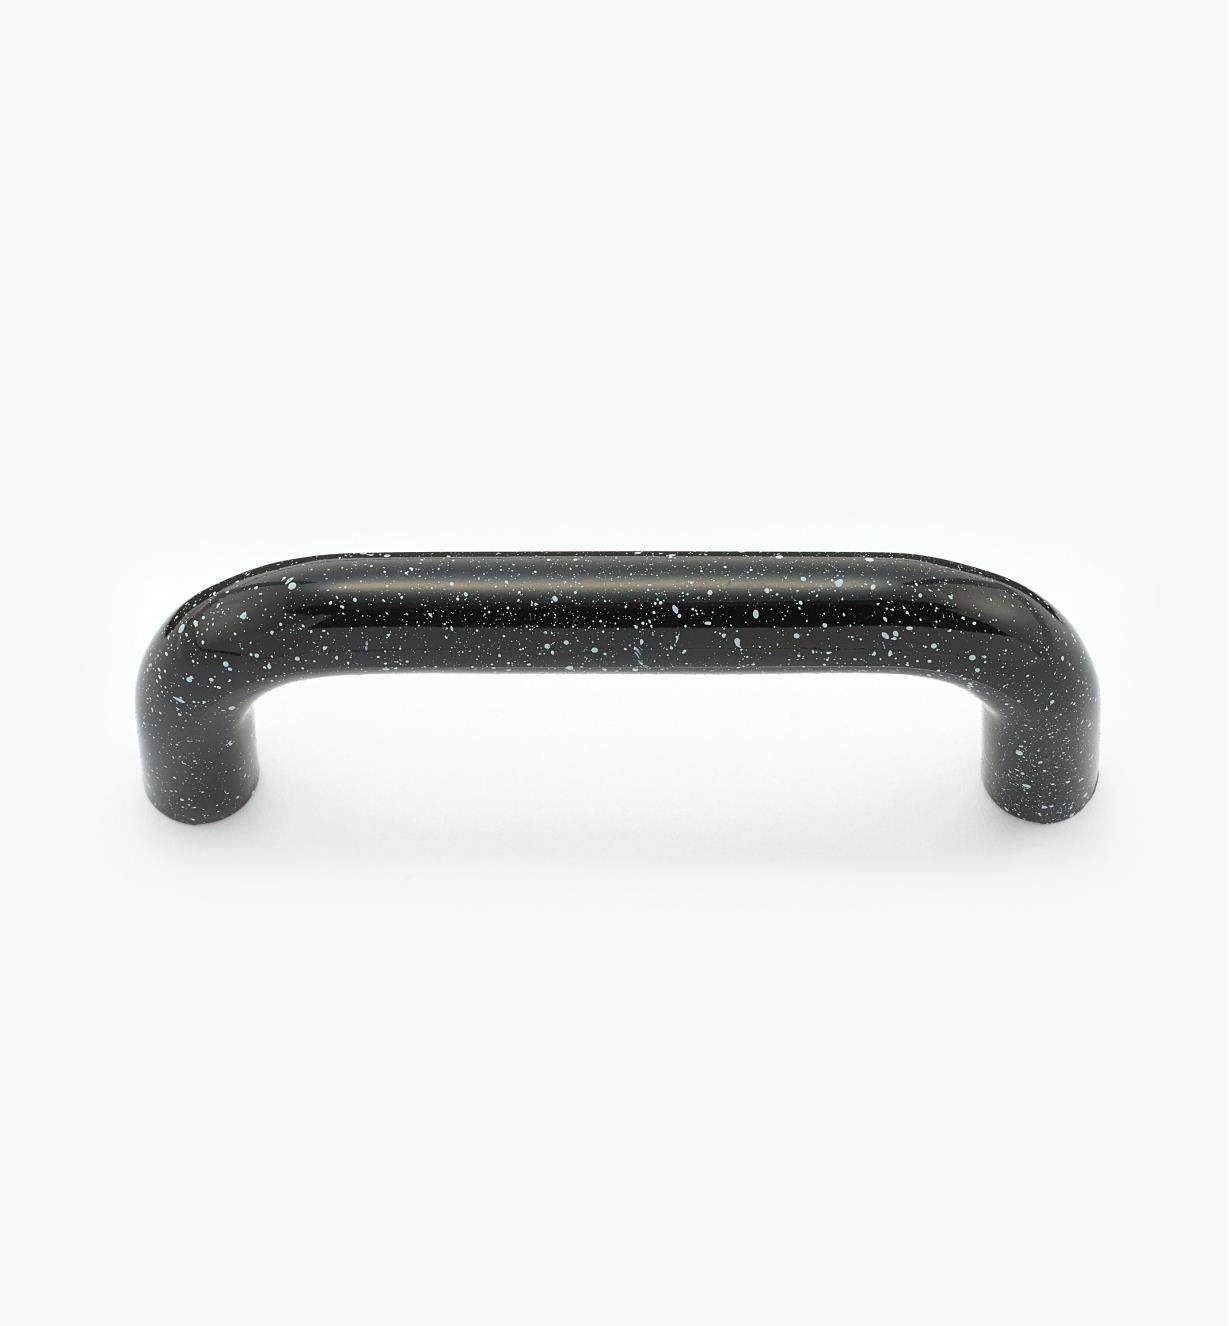 00W3954 - Petite poignée-fil en plastique, grès noir, 2 7/8 po